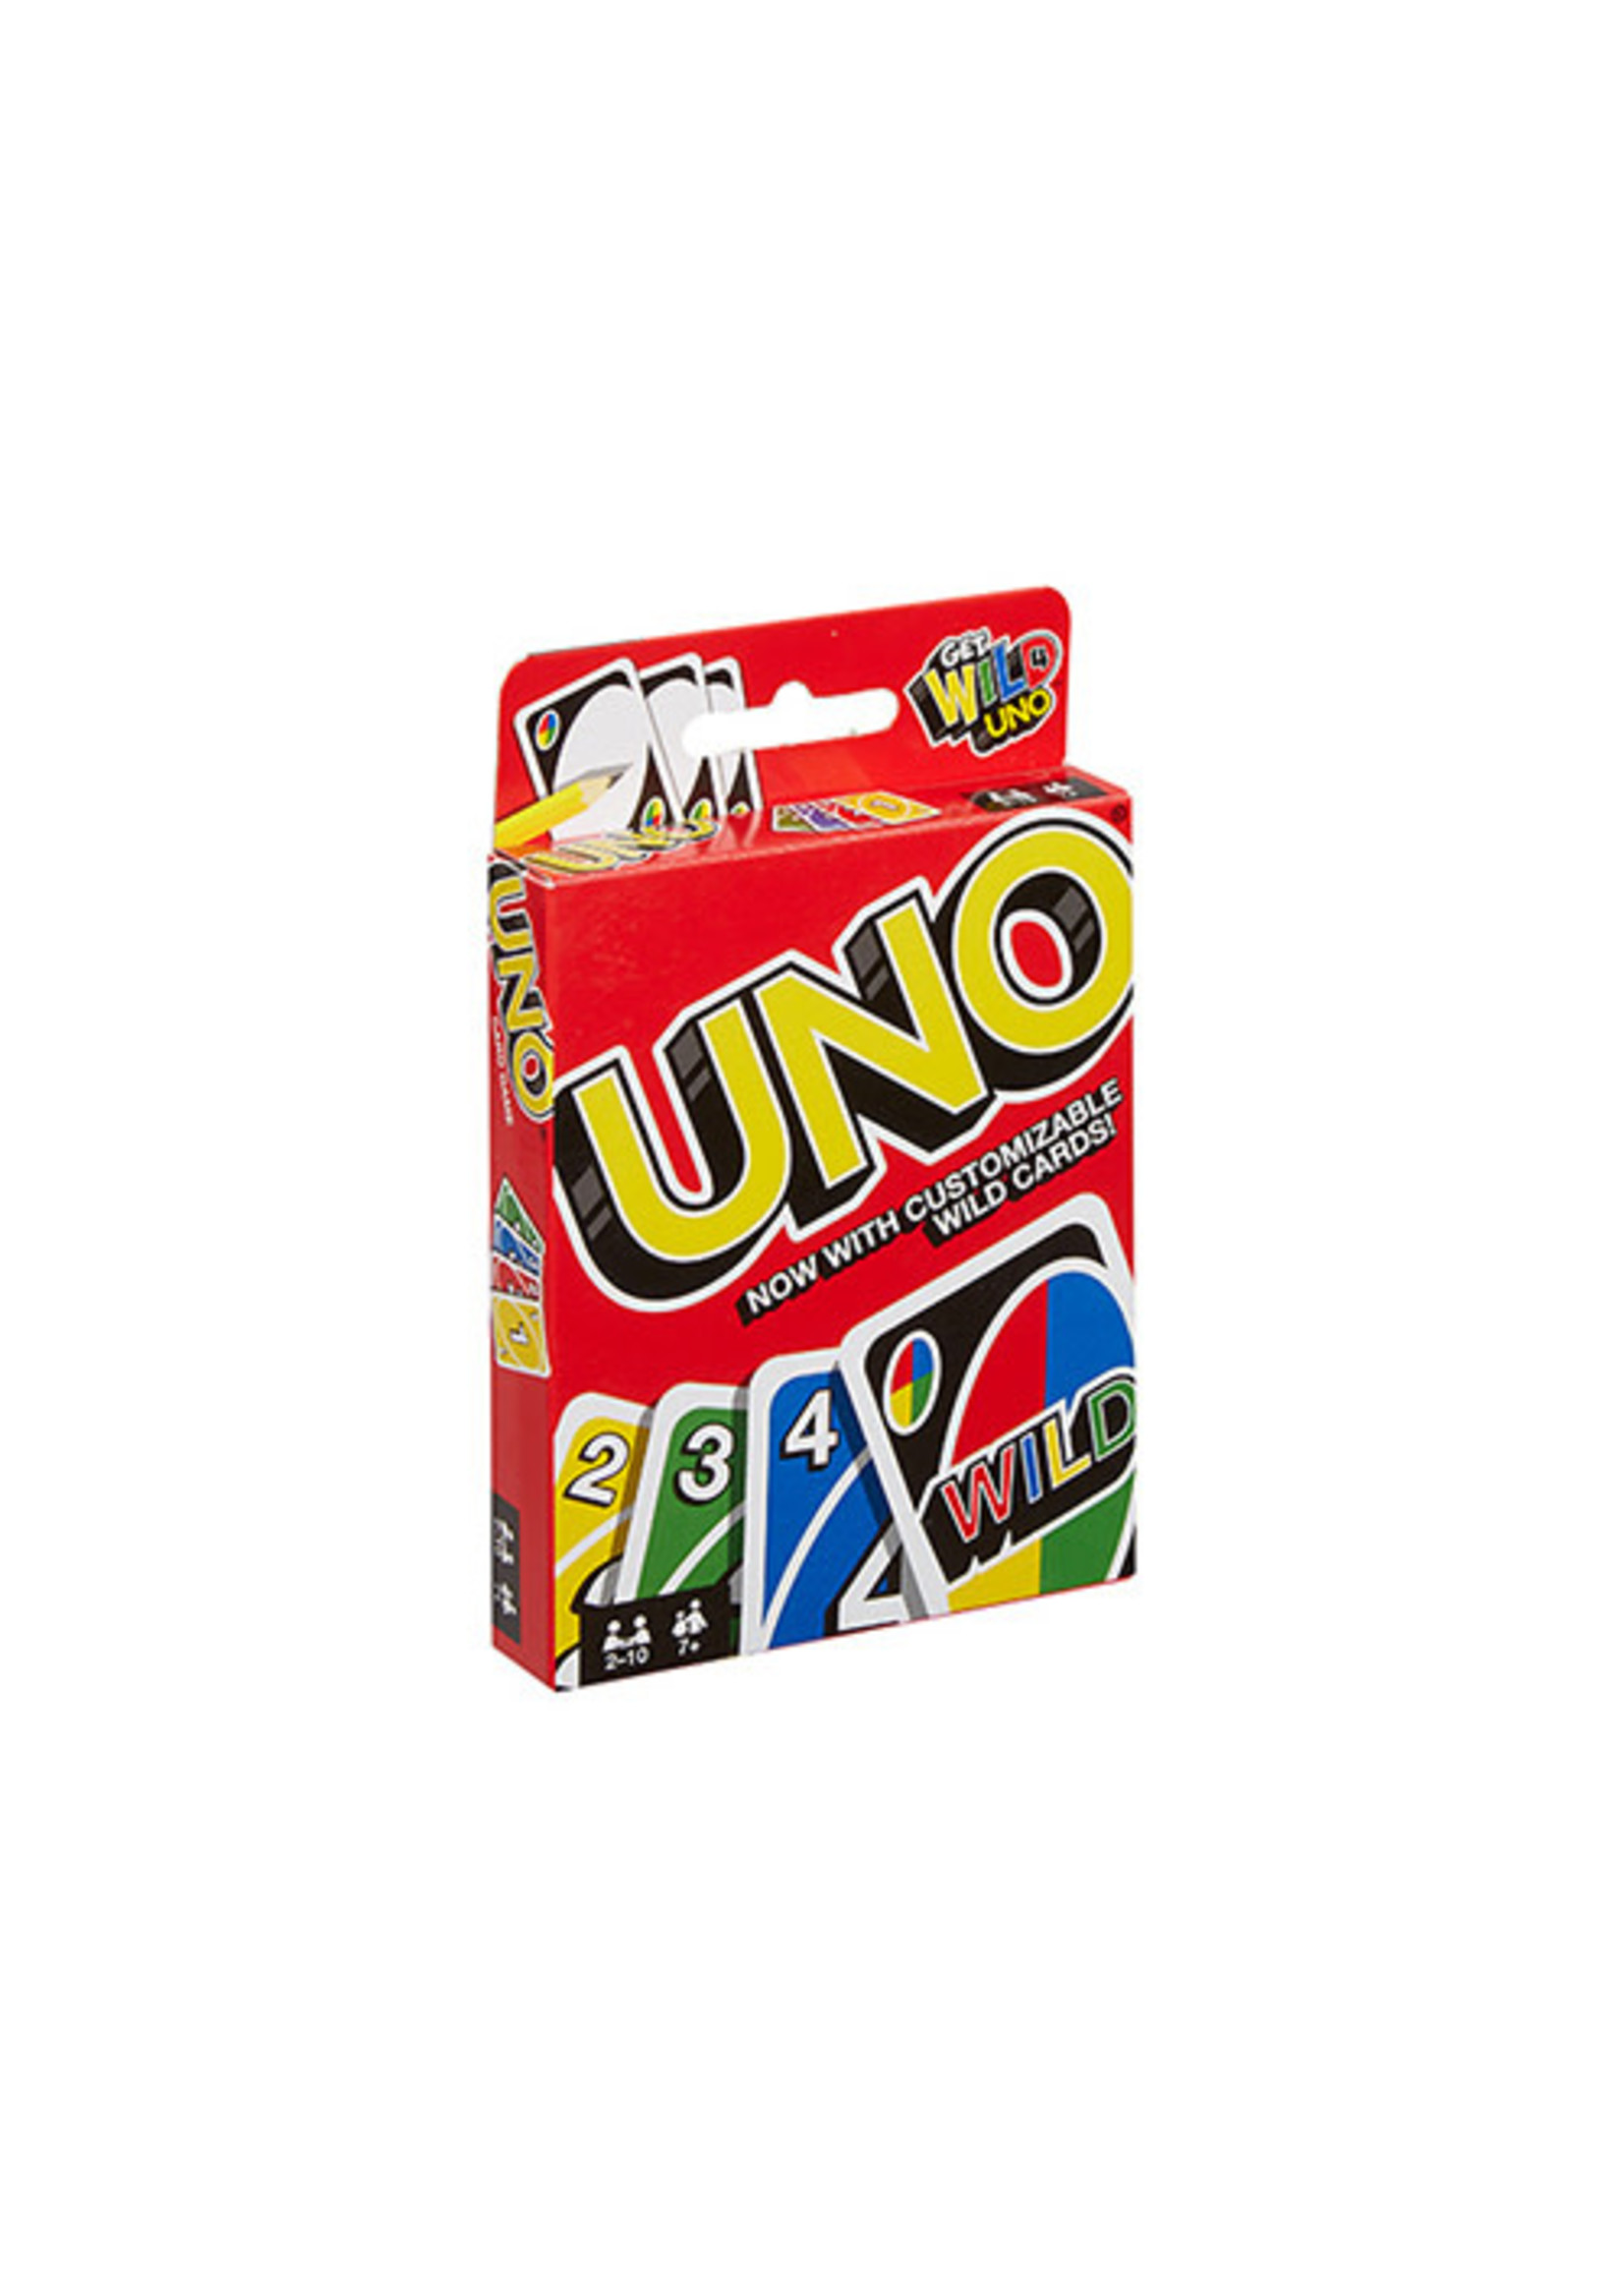  UNO FLIP CARD GAME : Merchandise: Books